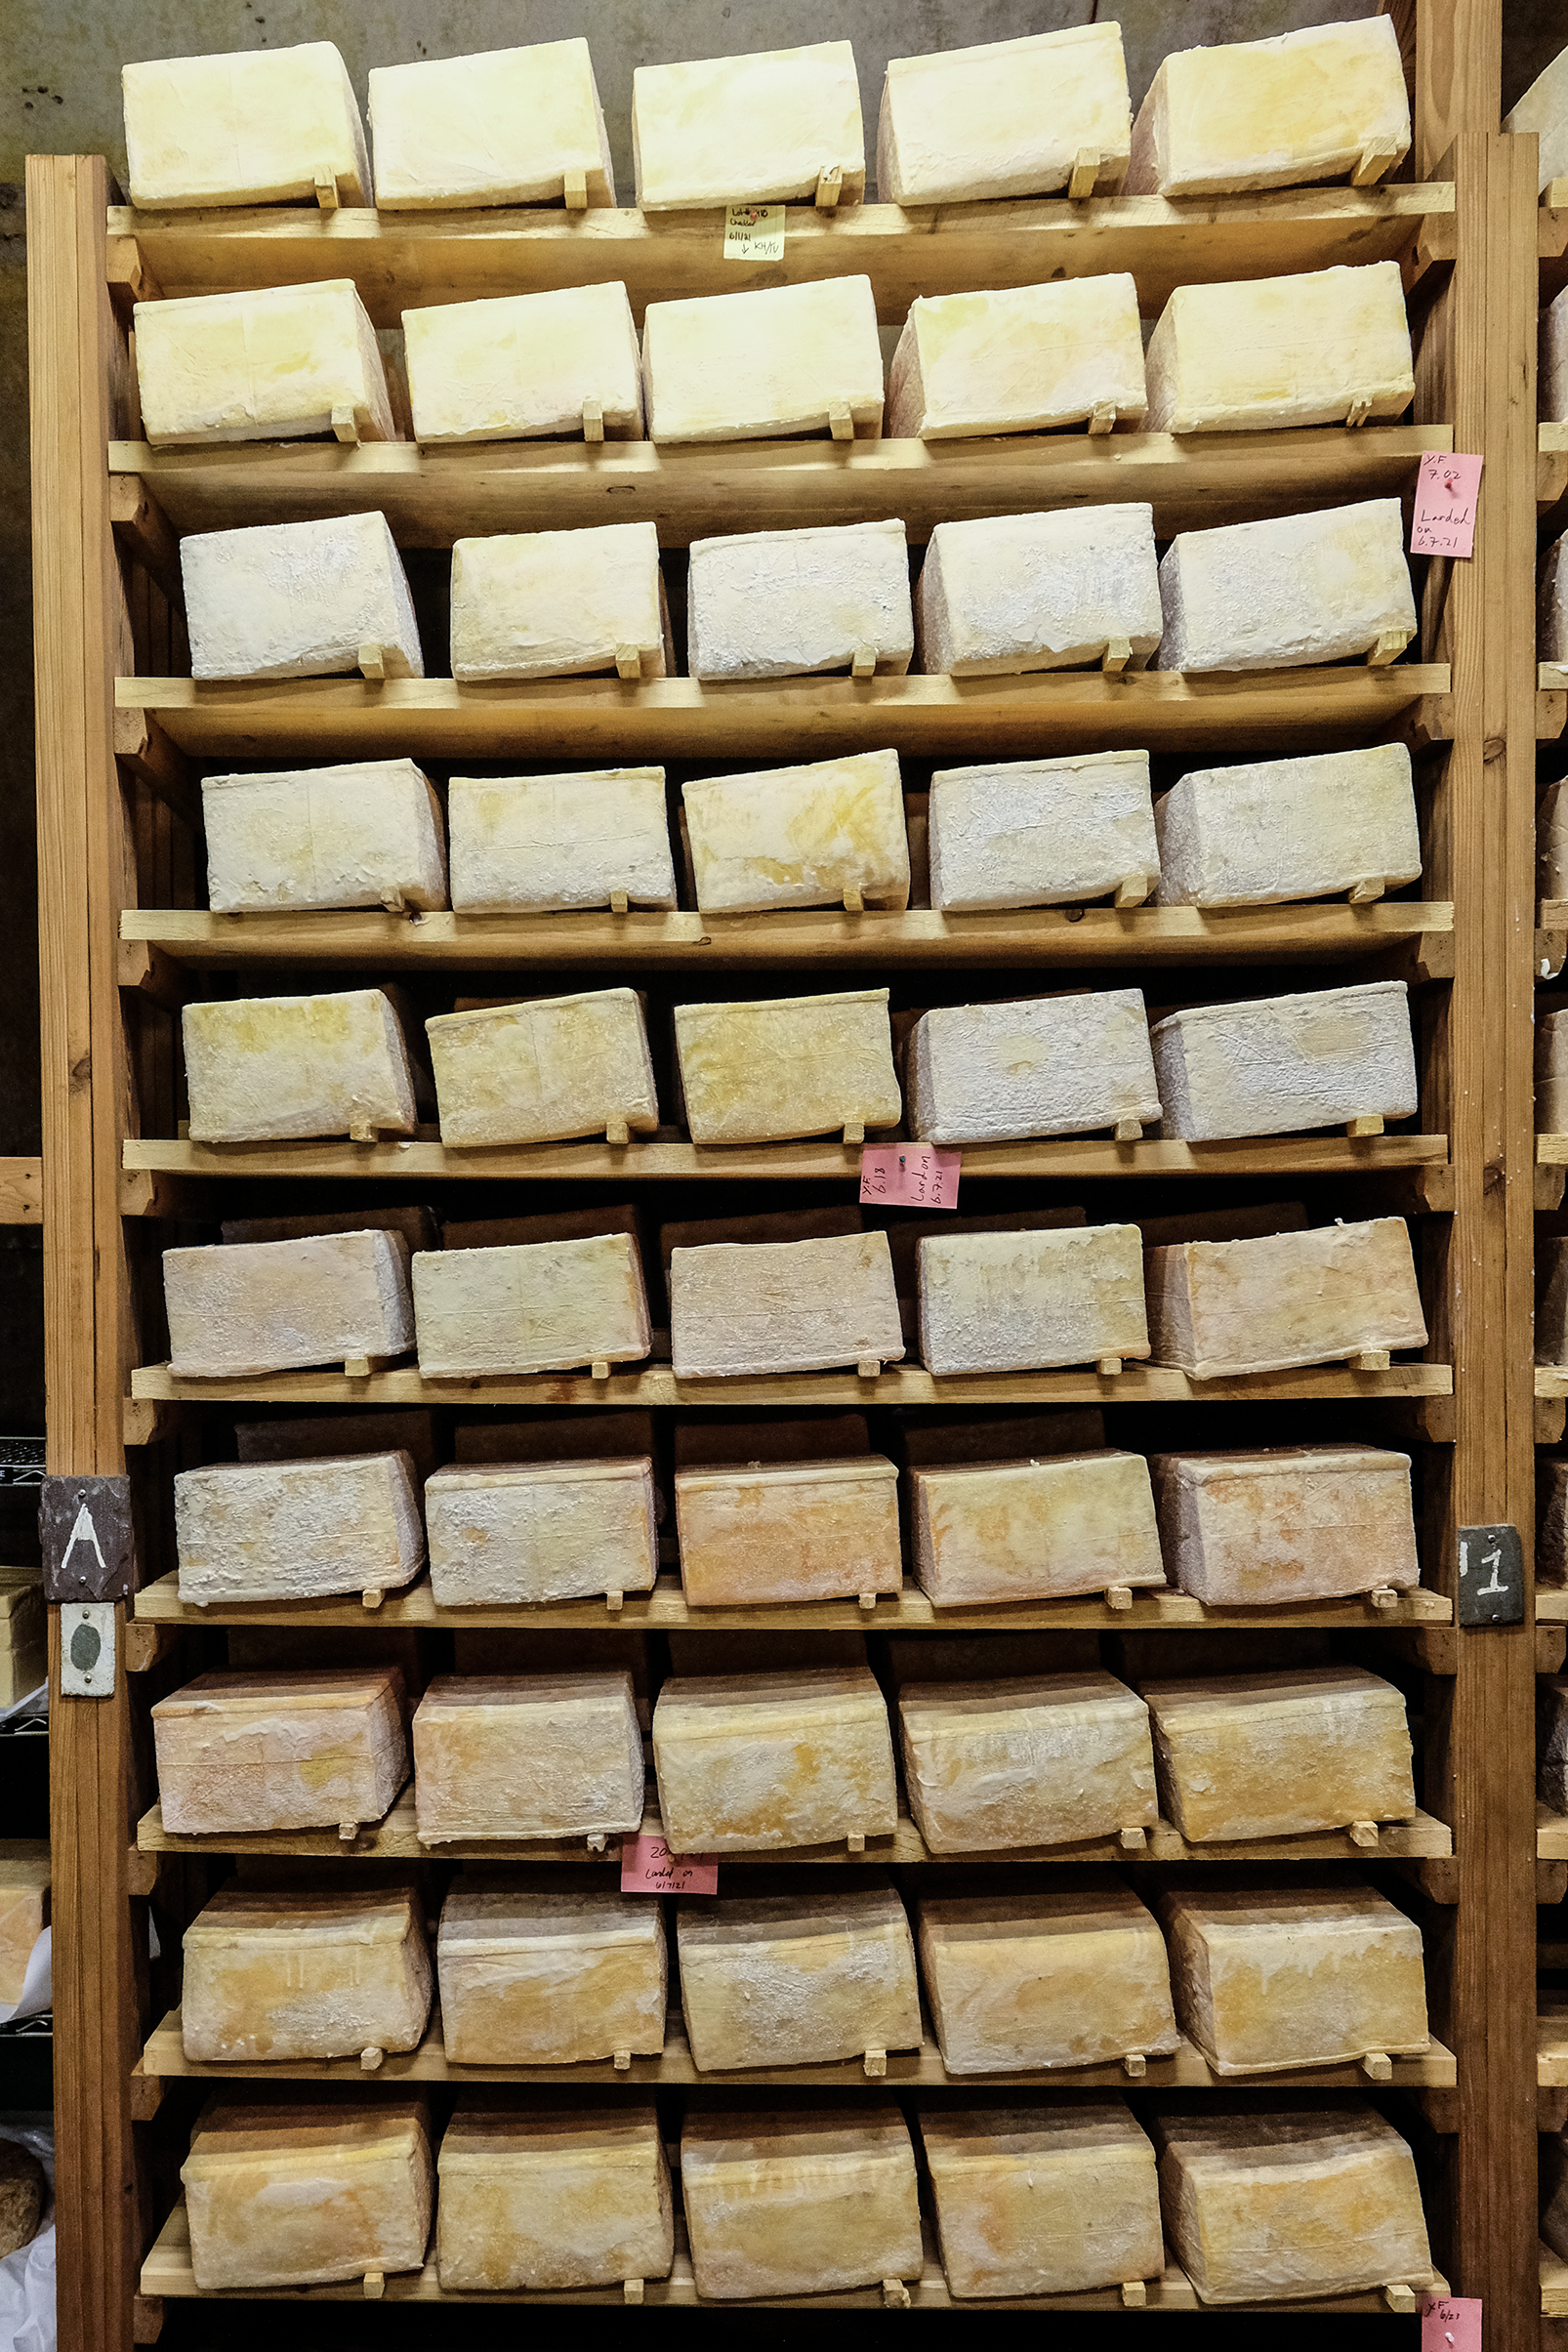 Stacks on stacks of Vault 5 Cheddar